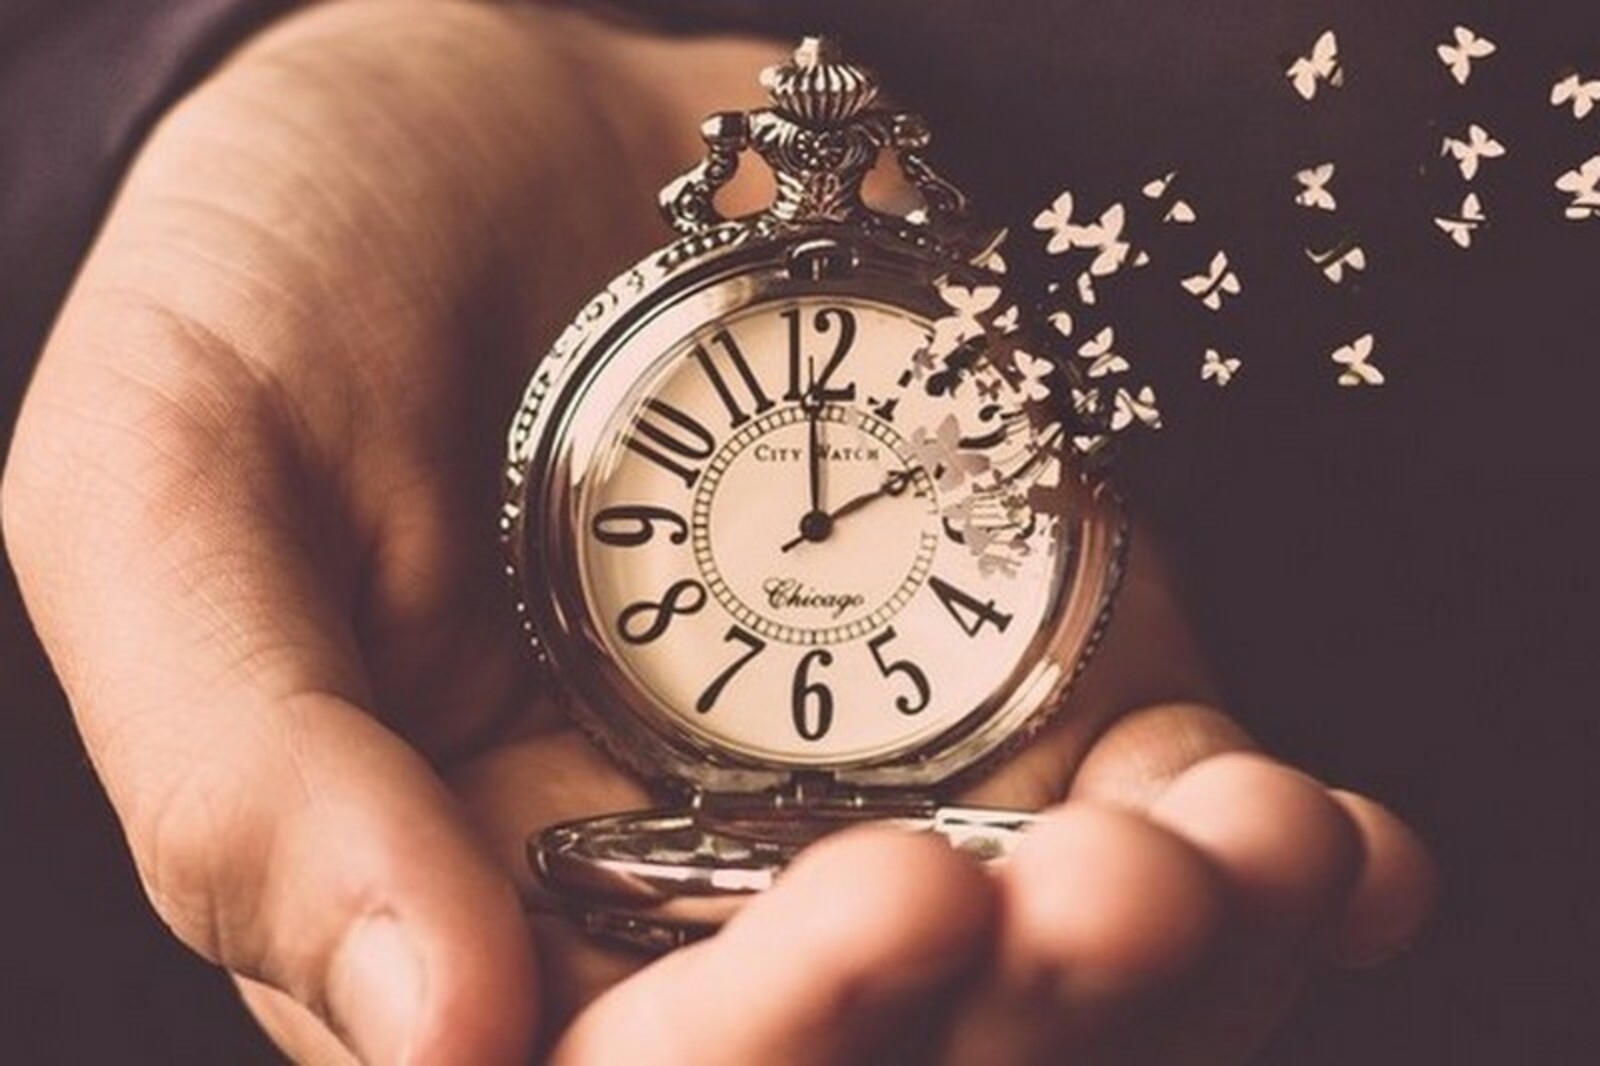 Ценить чужое время. Часы жизни. А время уходит. Тратить время. Тратить время впустую.